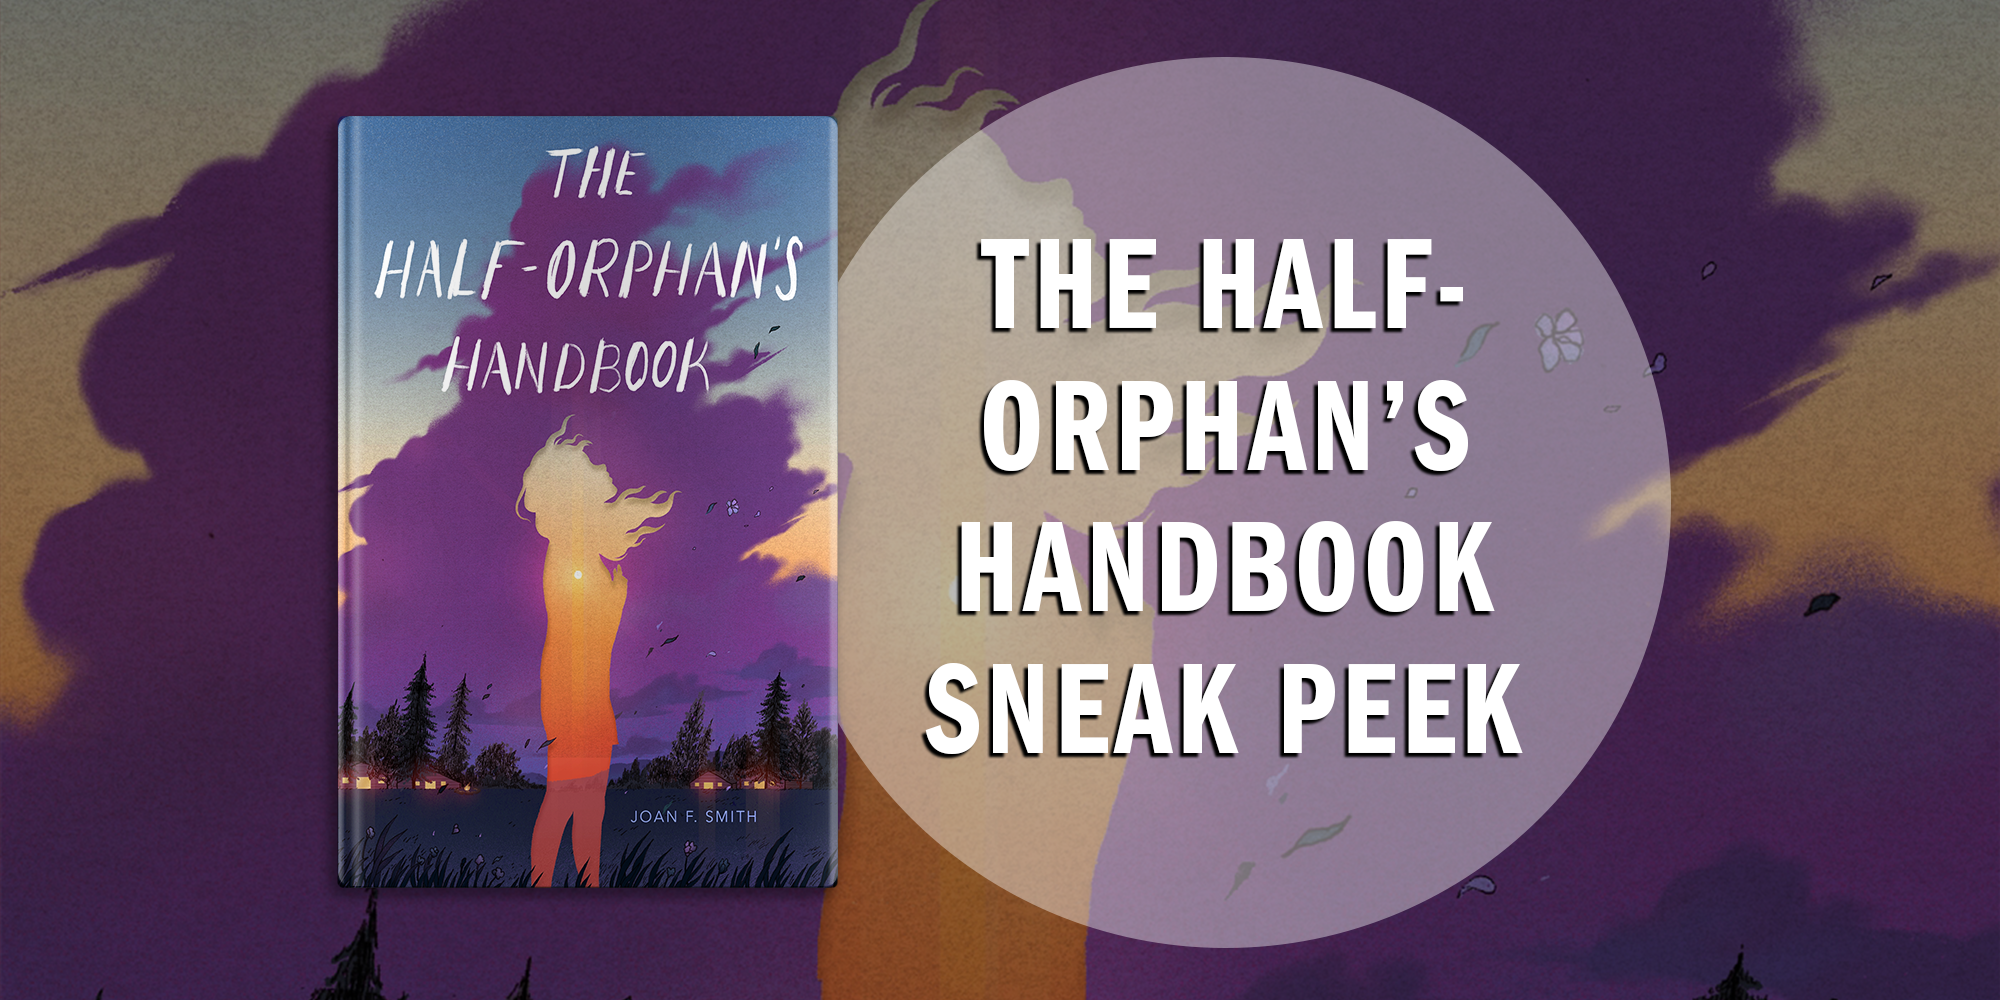 Get a Sneak Peek of The Half-Orphan’s Handbook